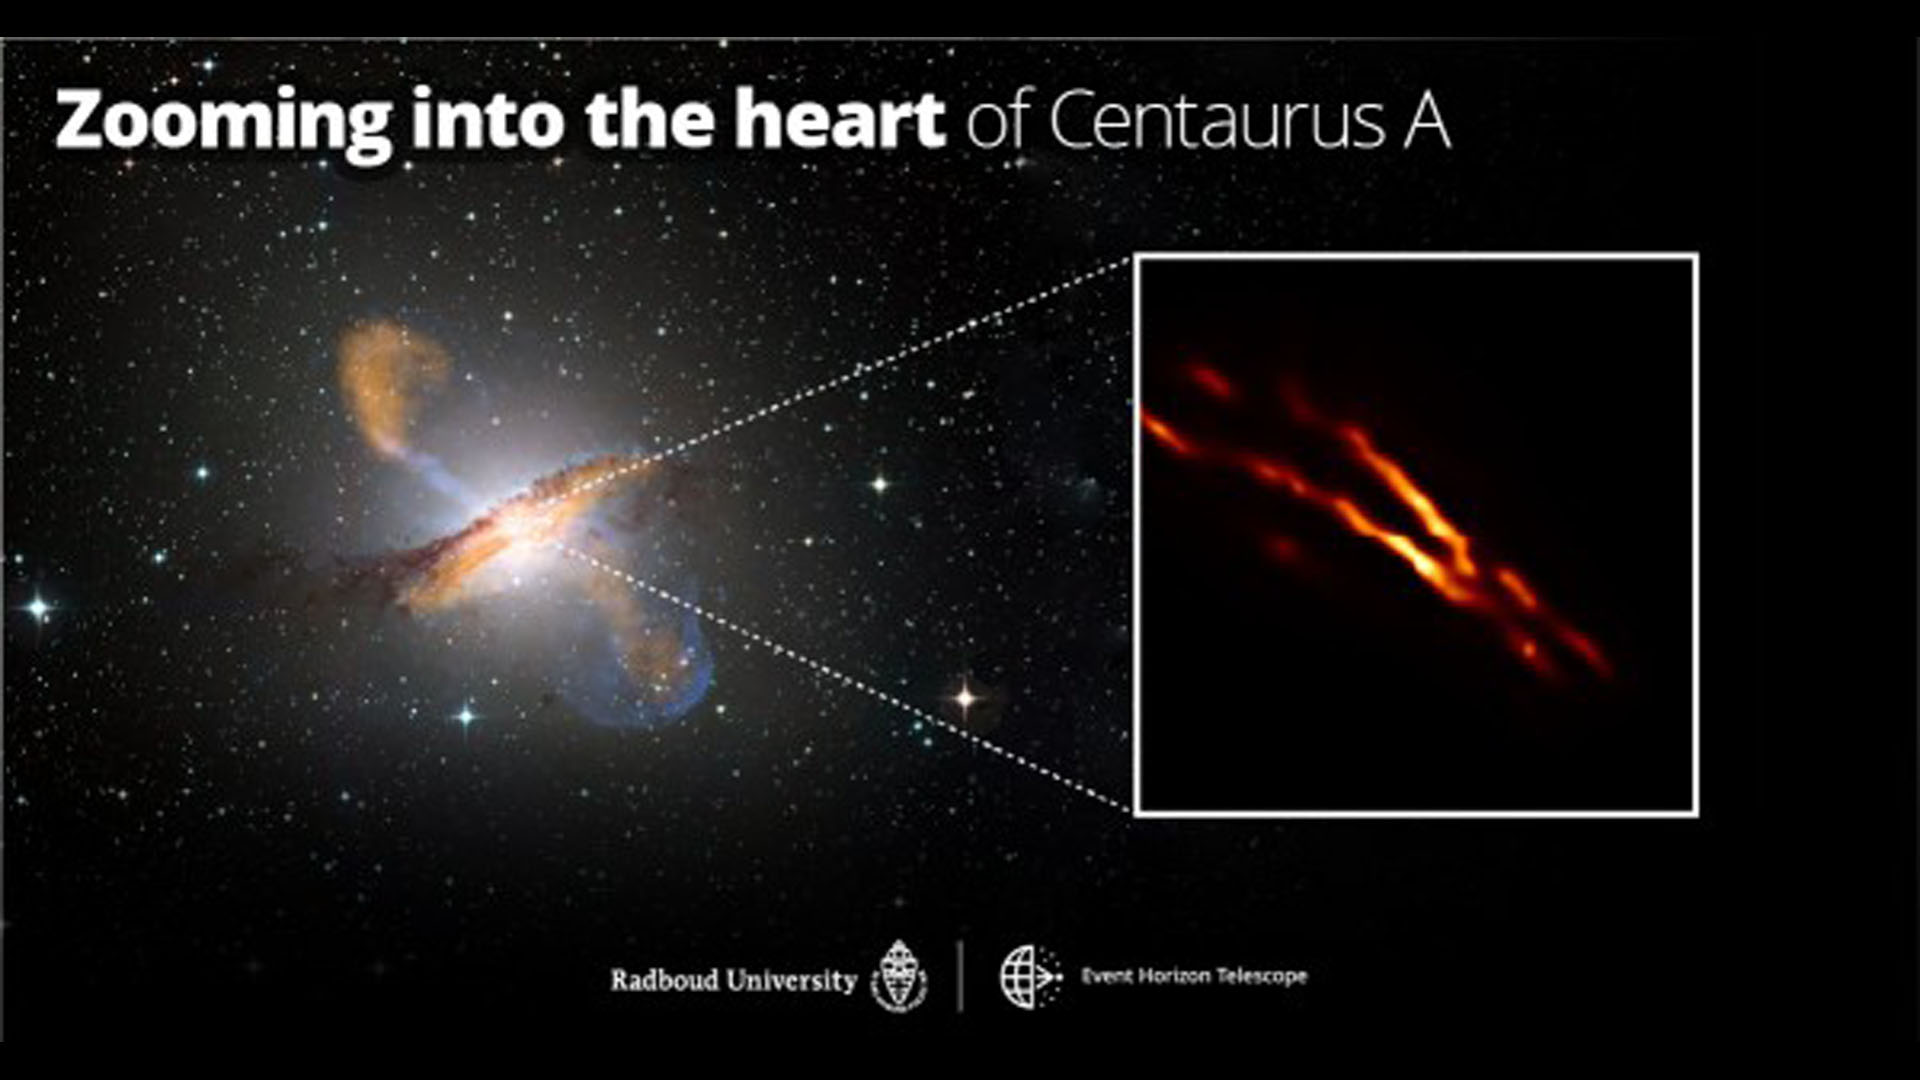 El chorro que emerge del agujero negro supermasivo en el centro de la galaxia Centaurus A fotografiado por el Event Horizon Telescope.